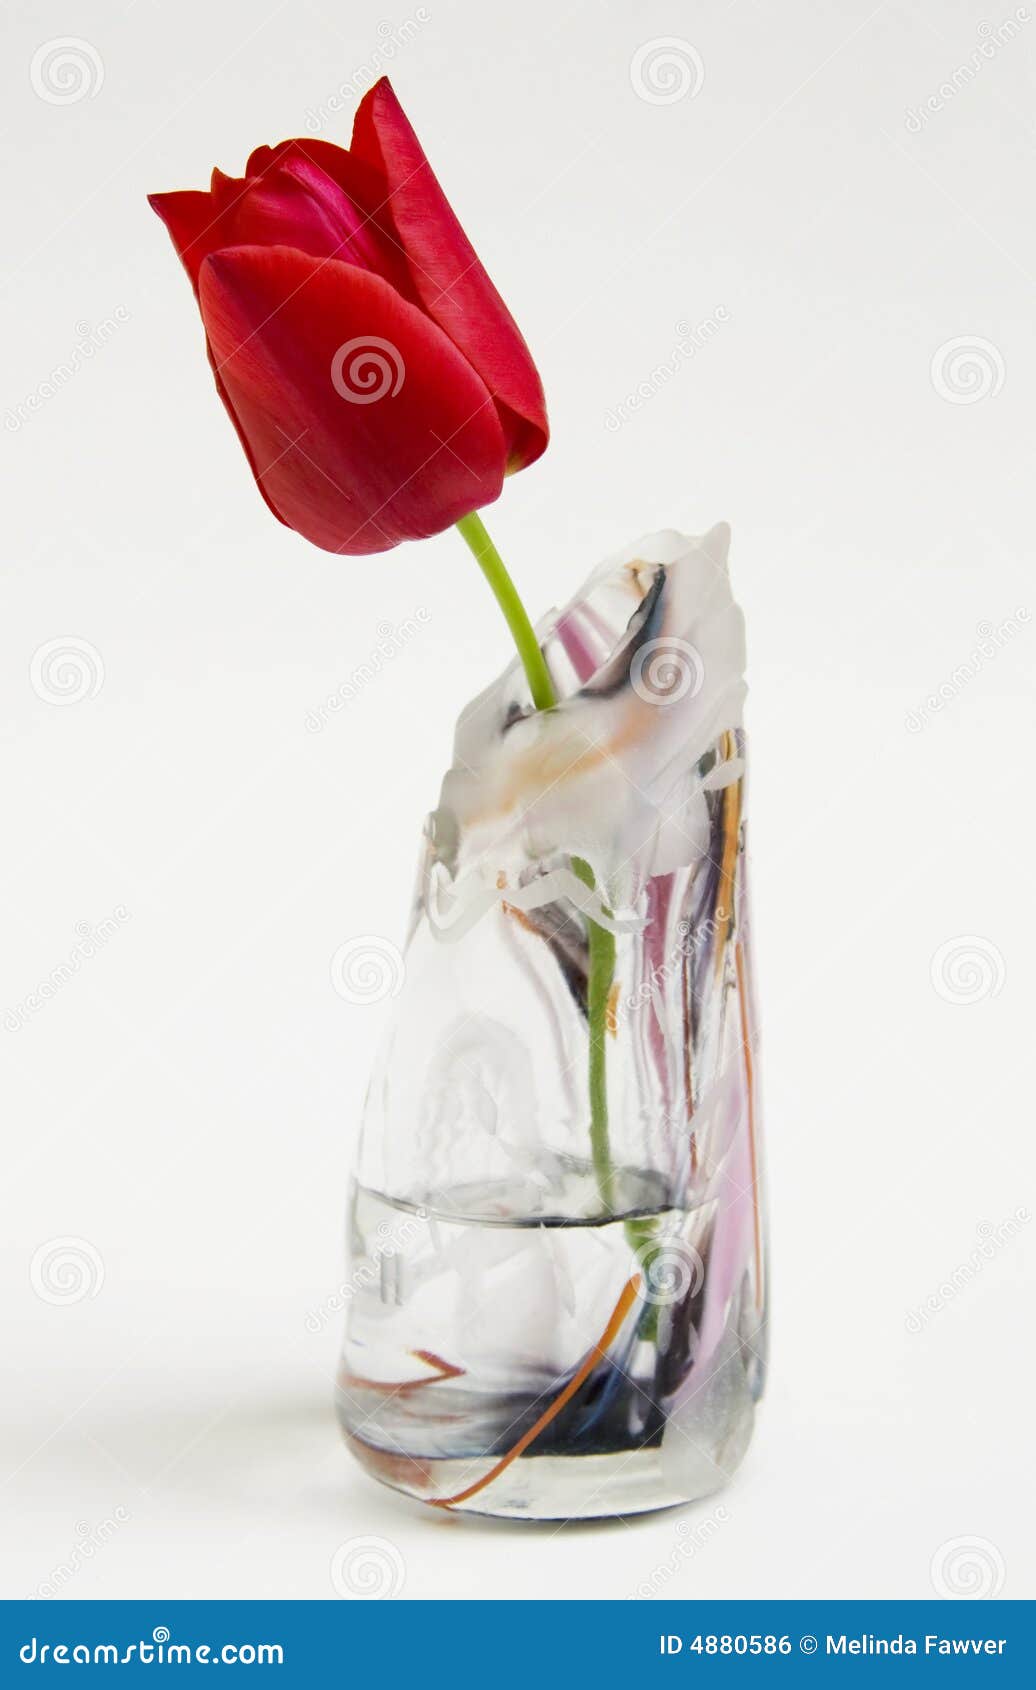 Как часто менять воду тюльпанам в вазе. Ваза с тюльпанами. Срезанные тюльпаны в воде. Вялые тюльпаны в вазе. Тюльпаны повяли в вазе.